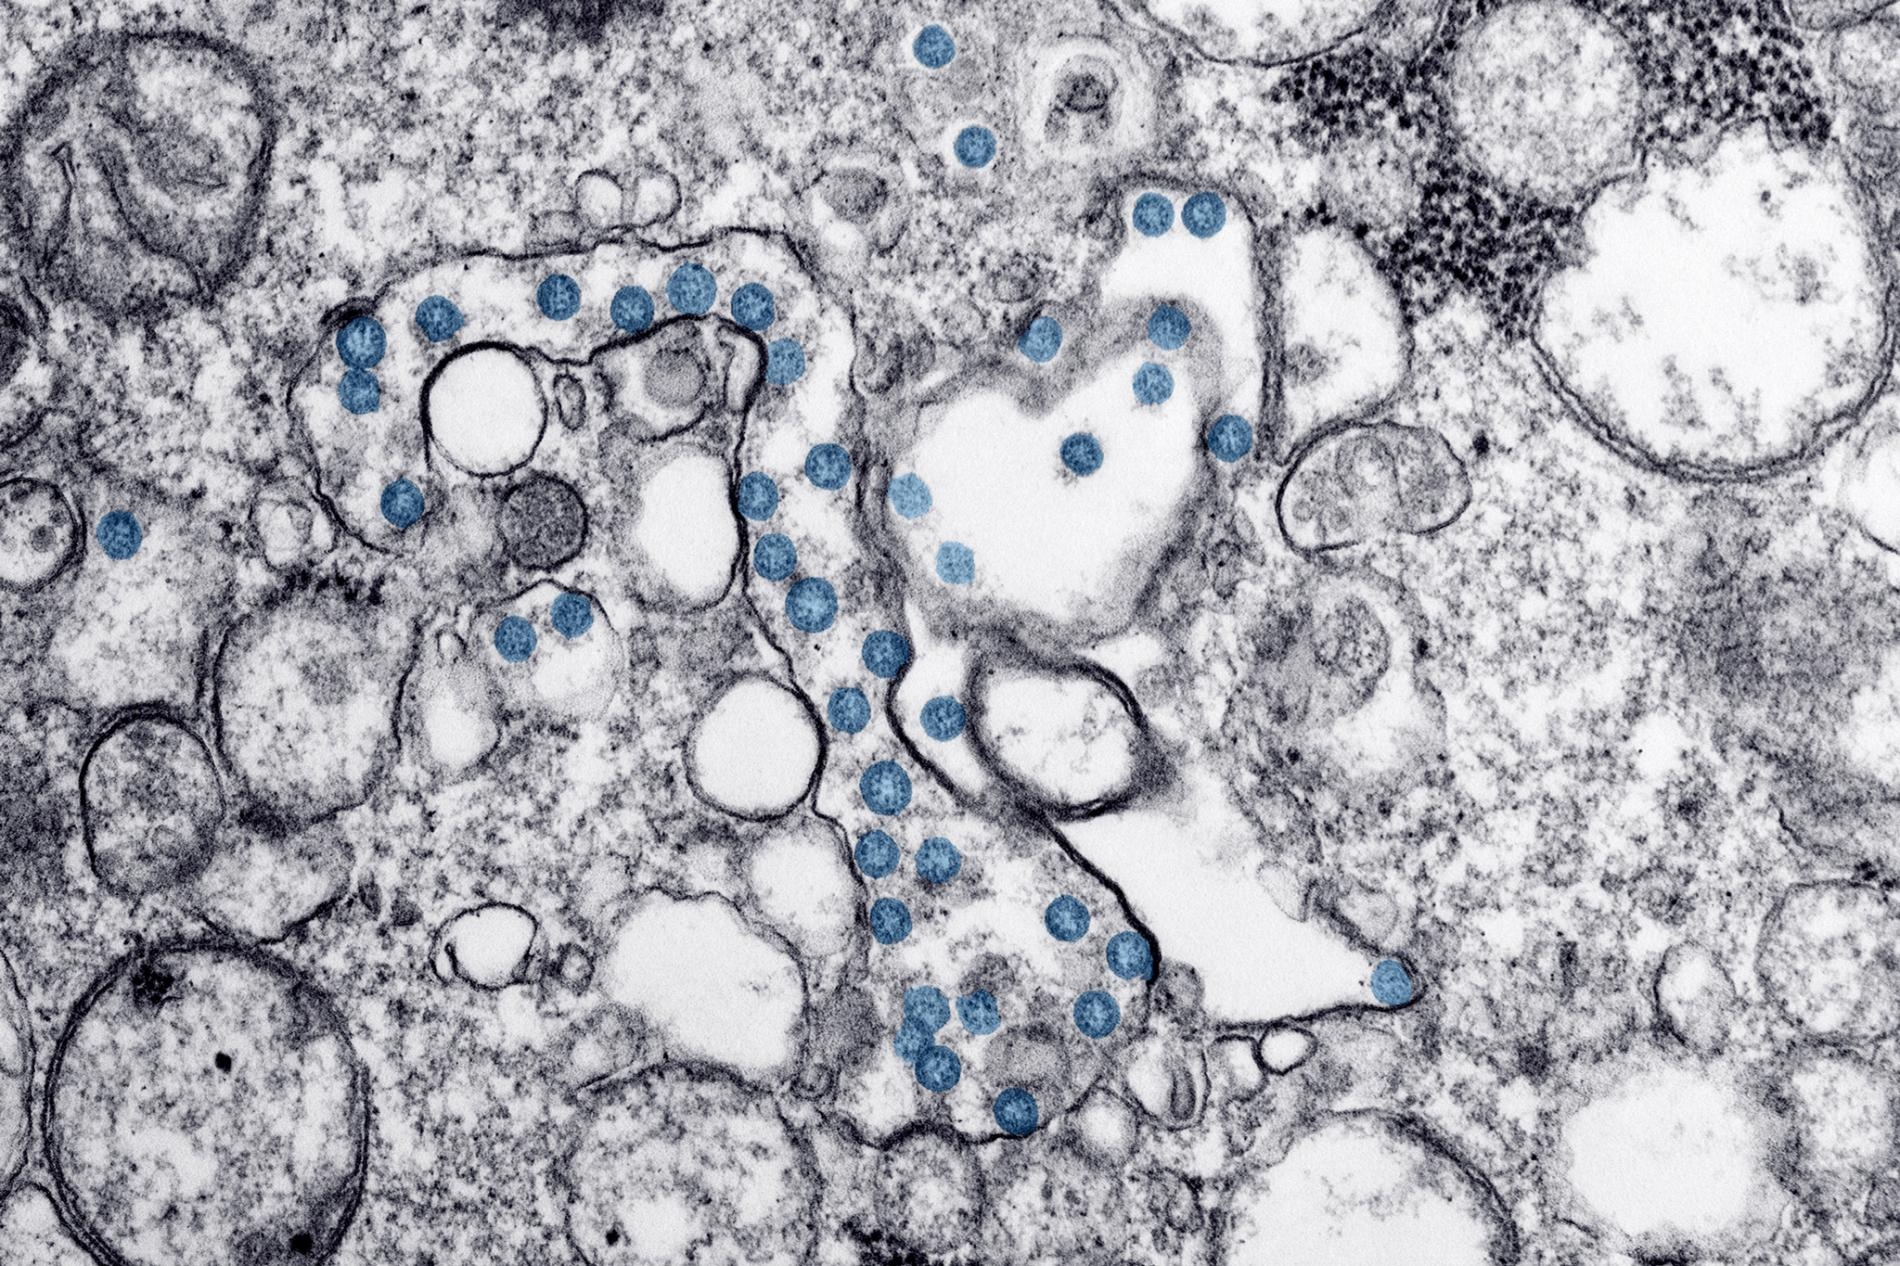 從美國第一位感染COVID-19的病人體內分離出來的新型冠狀病毒，利用穿透式電子顯微鏡觀察到的影像，可看到球形的病毒顆粒（藍色）的病毒基因組（黑色小點）。IMAGE BY CDC / HANNAH A BULLOCK; AZAIBI TAMIN 